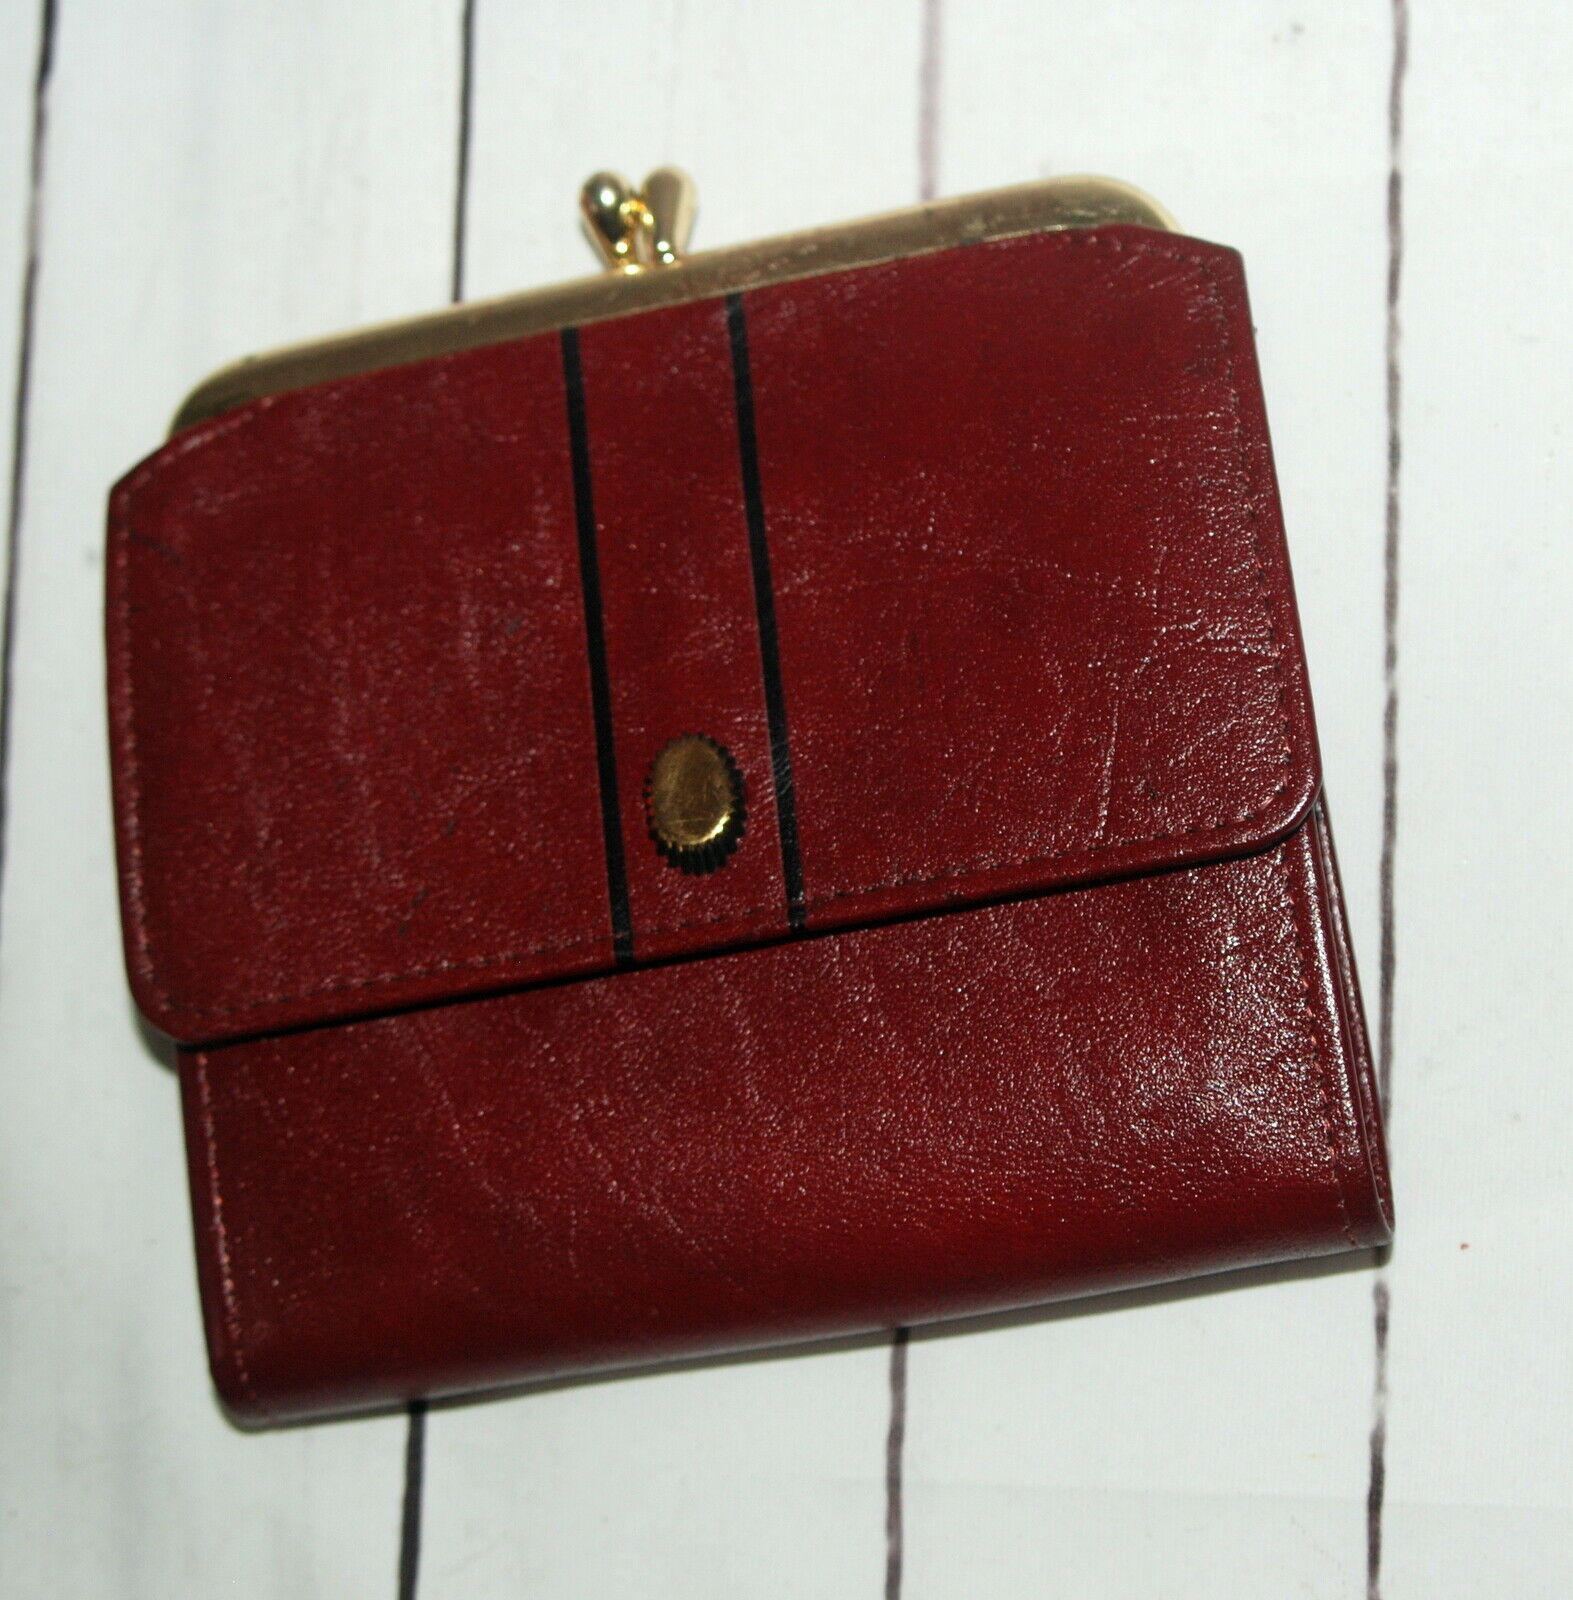 Vintage Princess Gardner Leather Change Purse Full Grain Cowhide Brown Burgundy